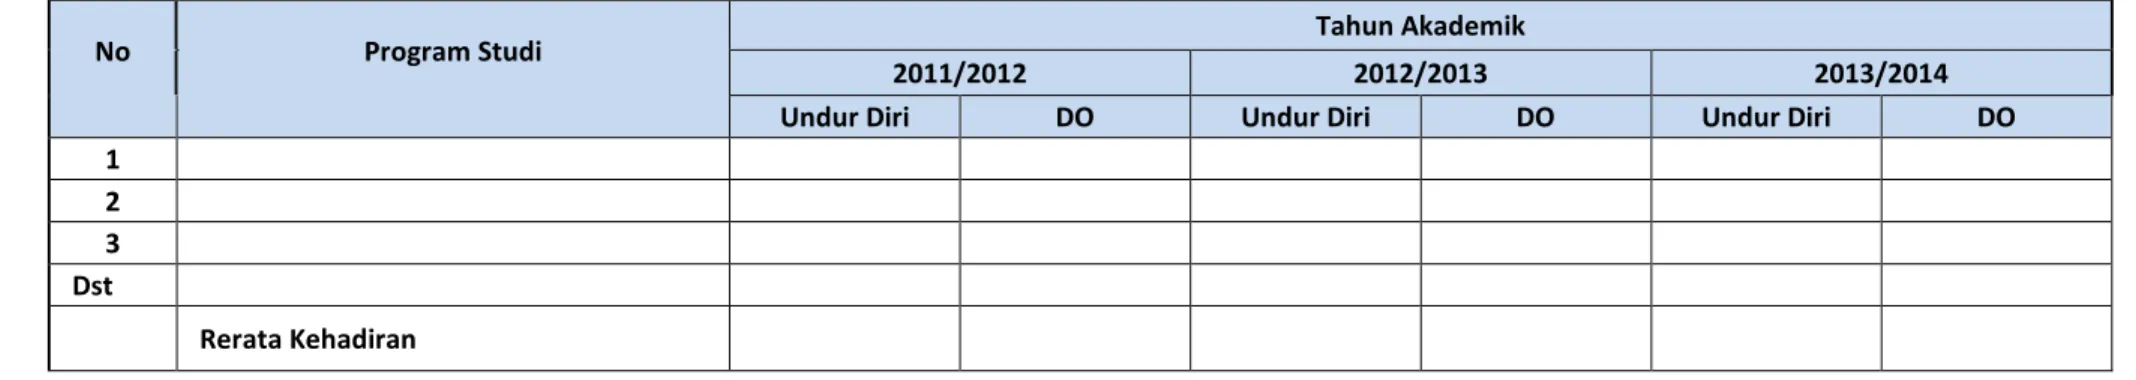 Tabel 3. Rekapitulasi Mahasiswa mengundurkan Diri dan DO 3 tahun terakhir  No     Program Studi    Tahun Akademik 2011/2012 2012/2013  2013/2014 